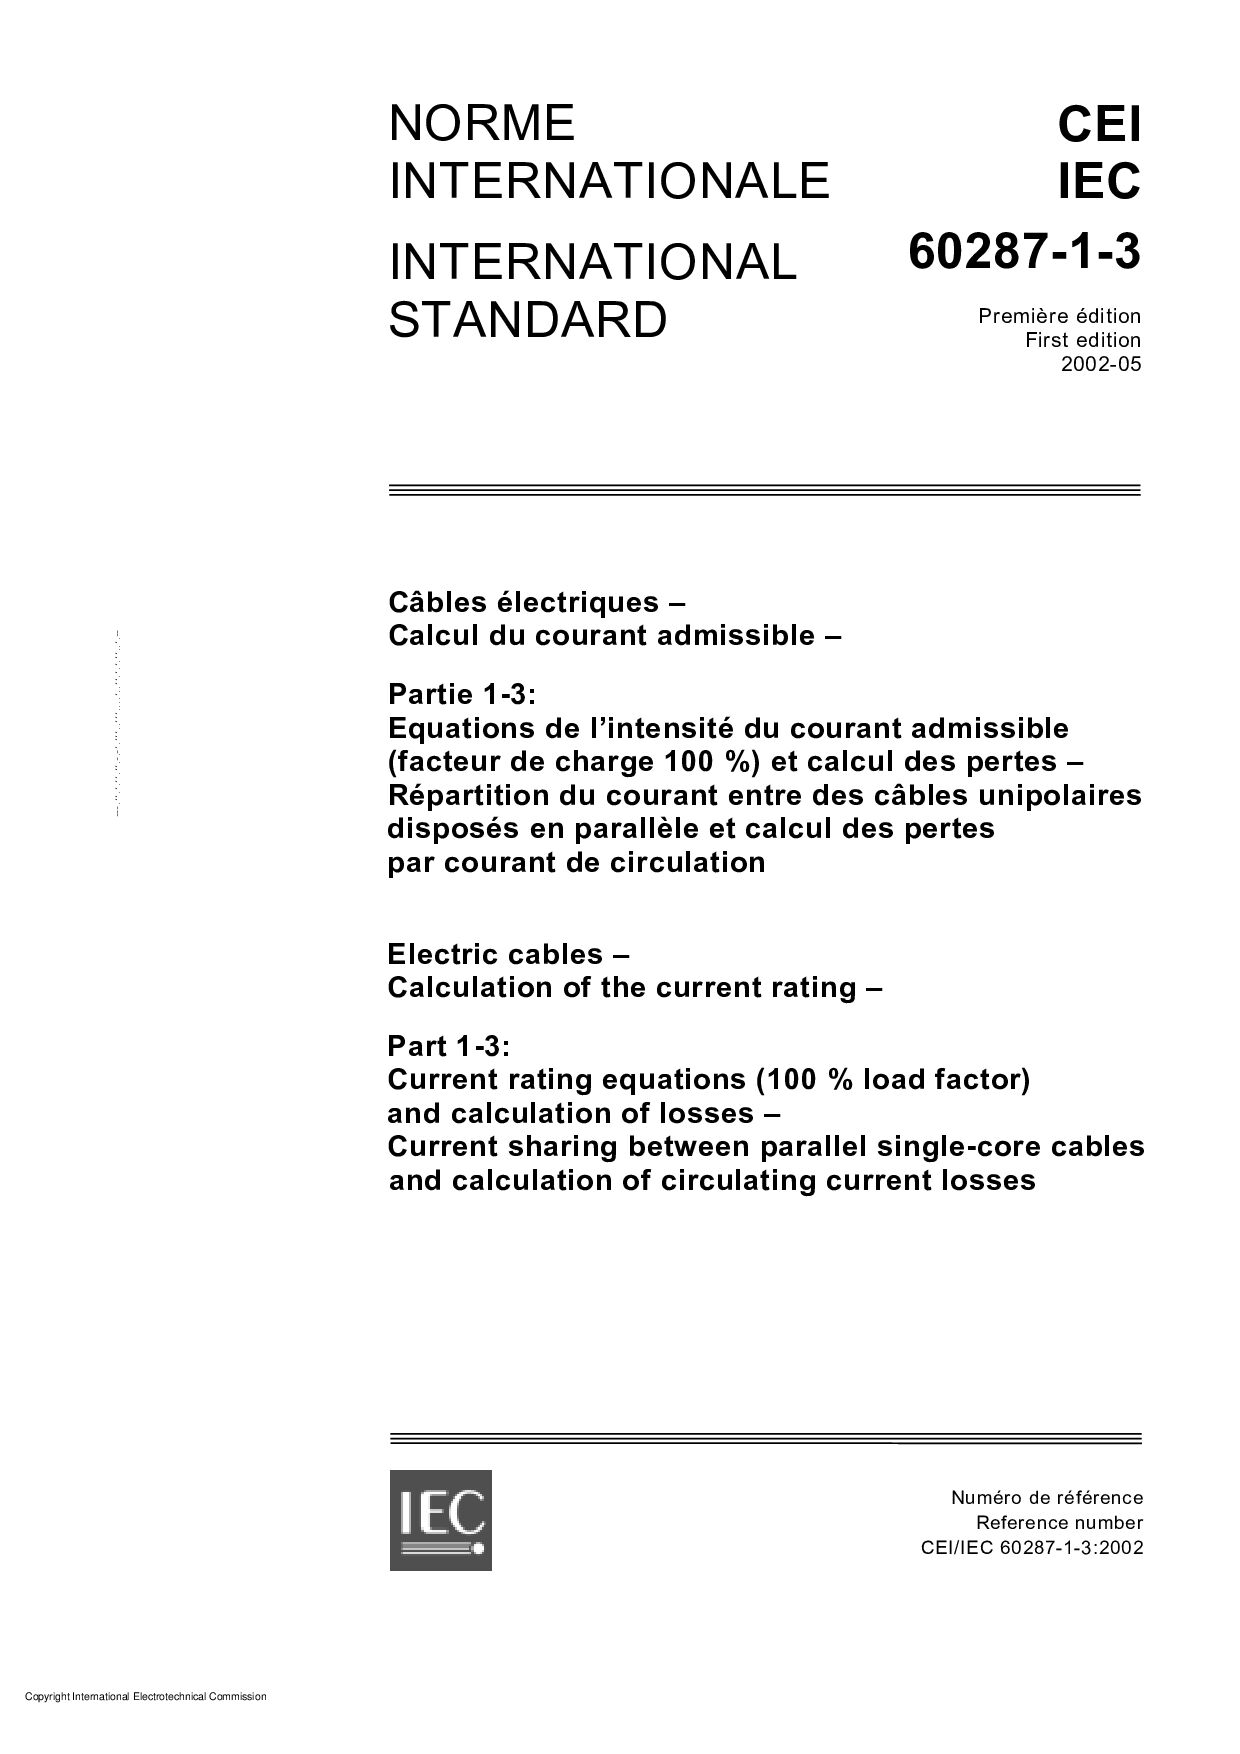 IEC 60287-1-3-2002